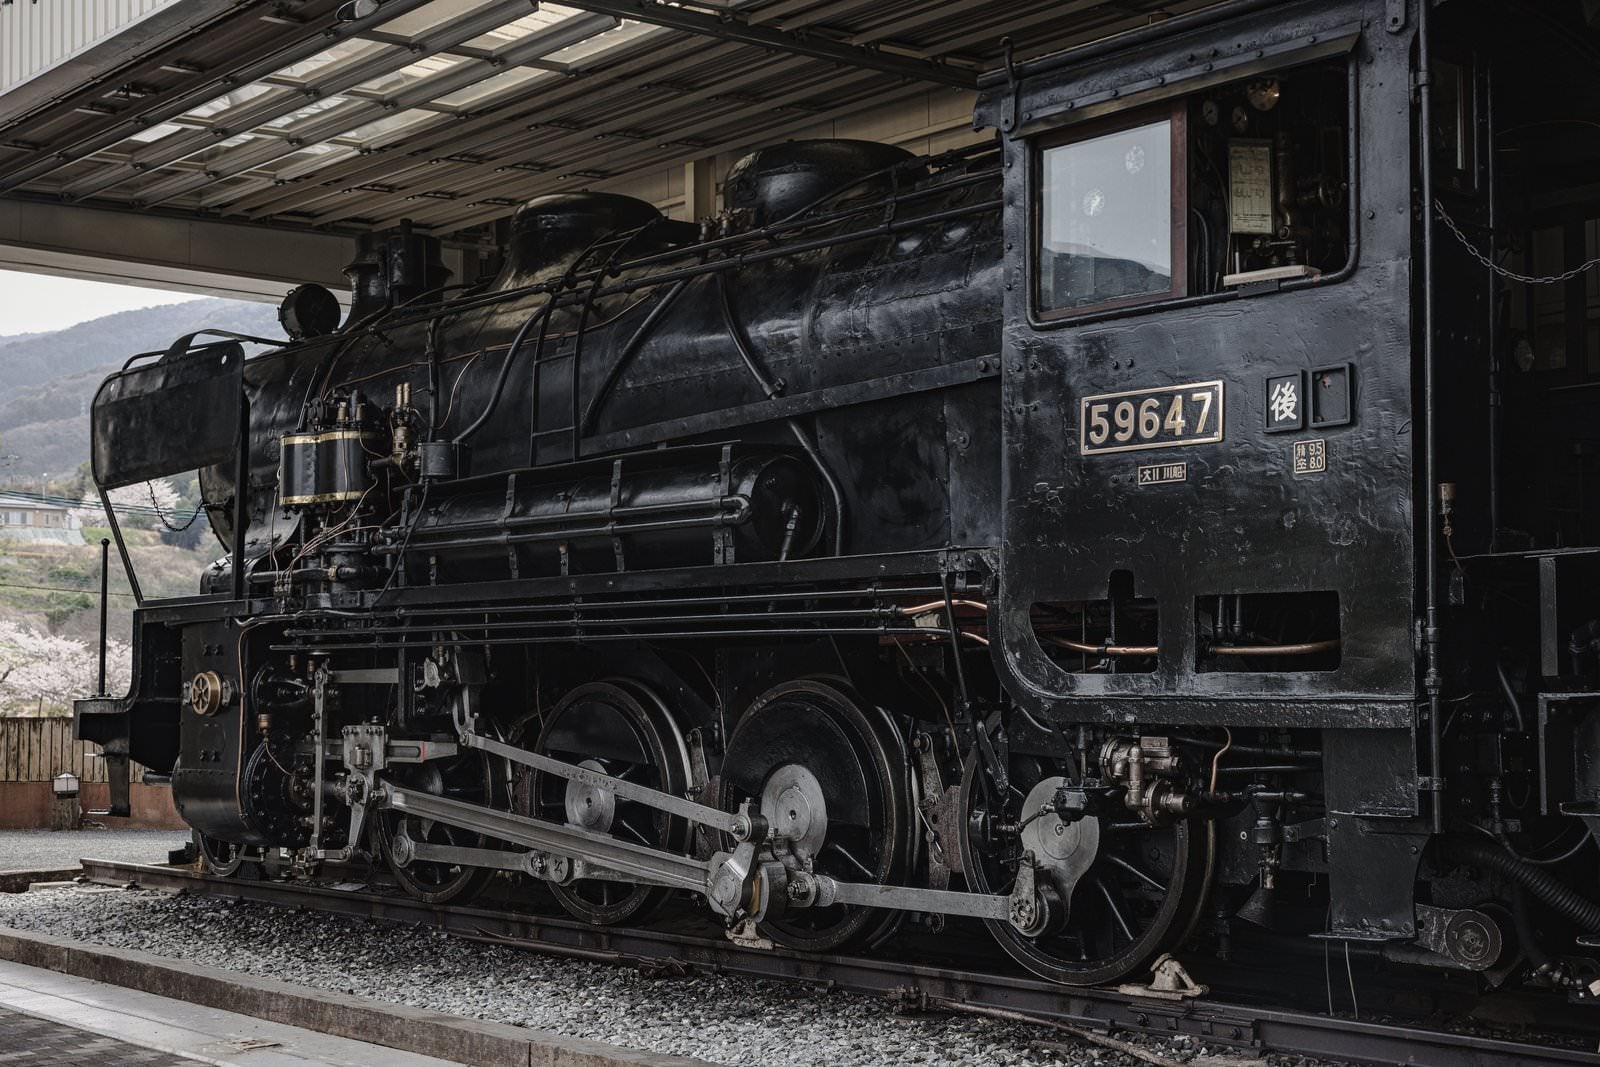 「＃　静態保存蒸気機関車・9600形59647号機の ボイラー部全景」の写真